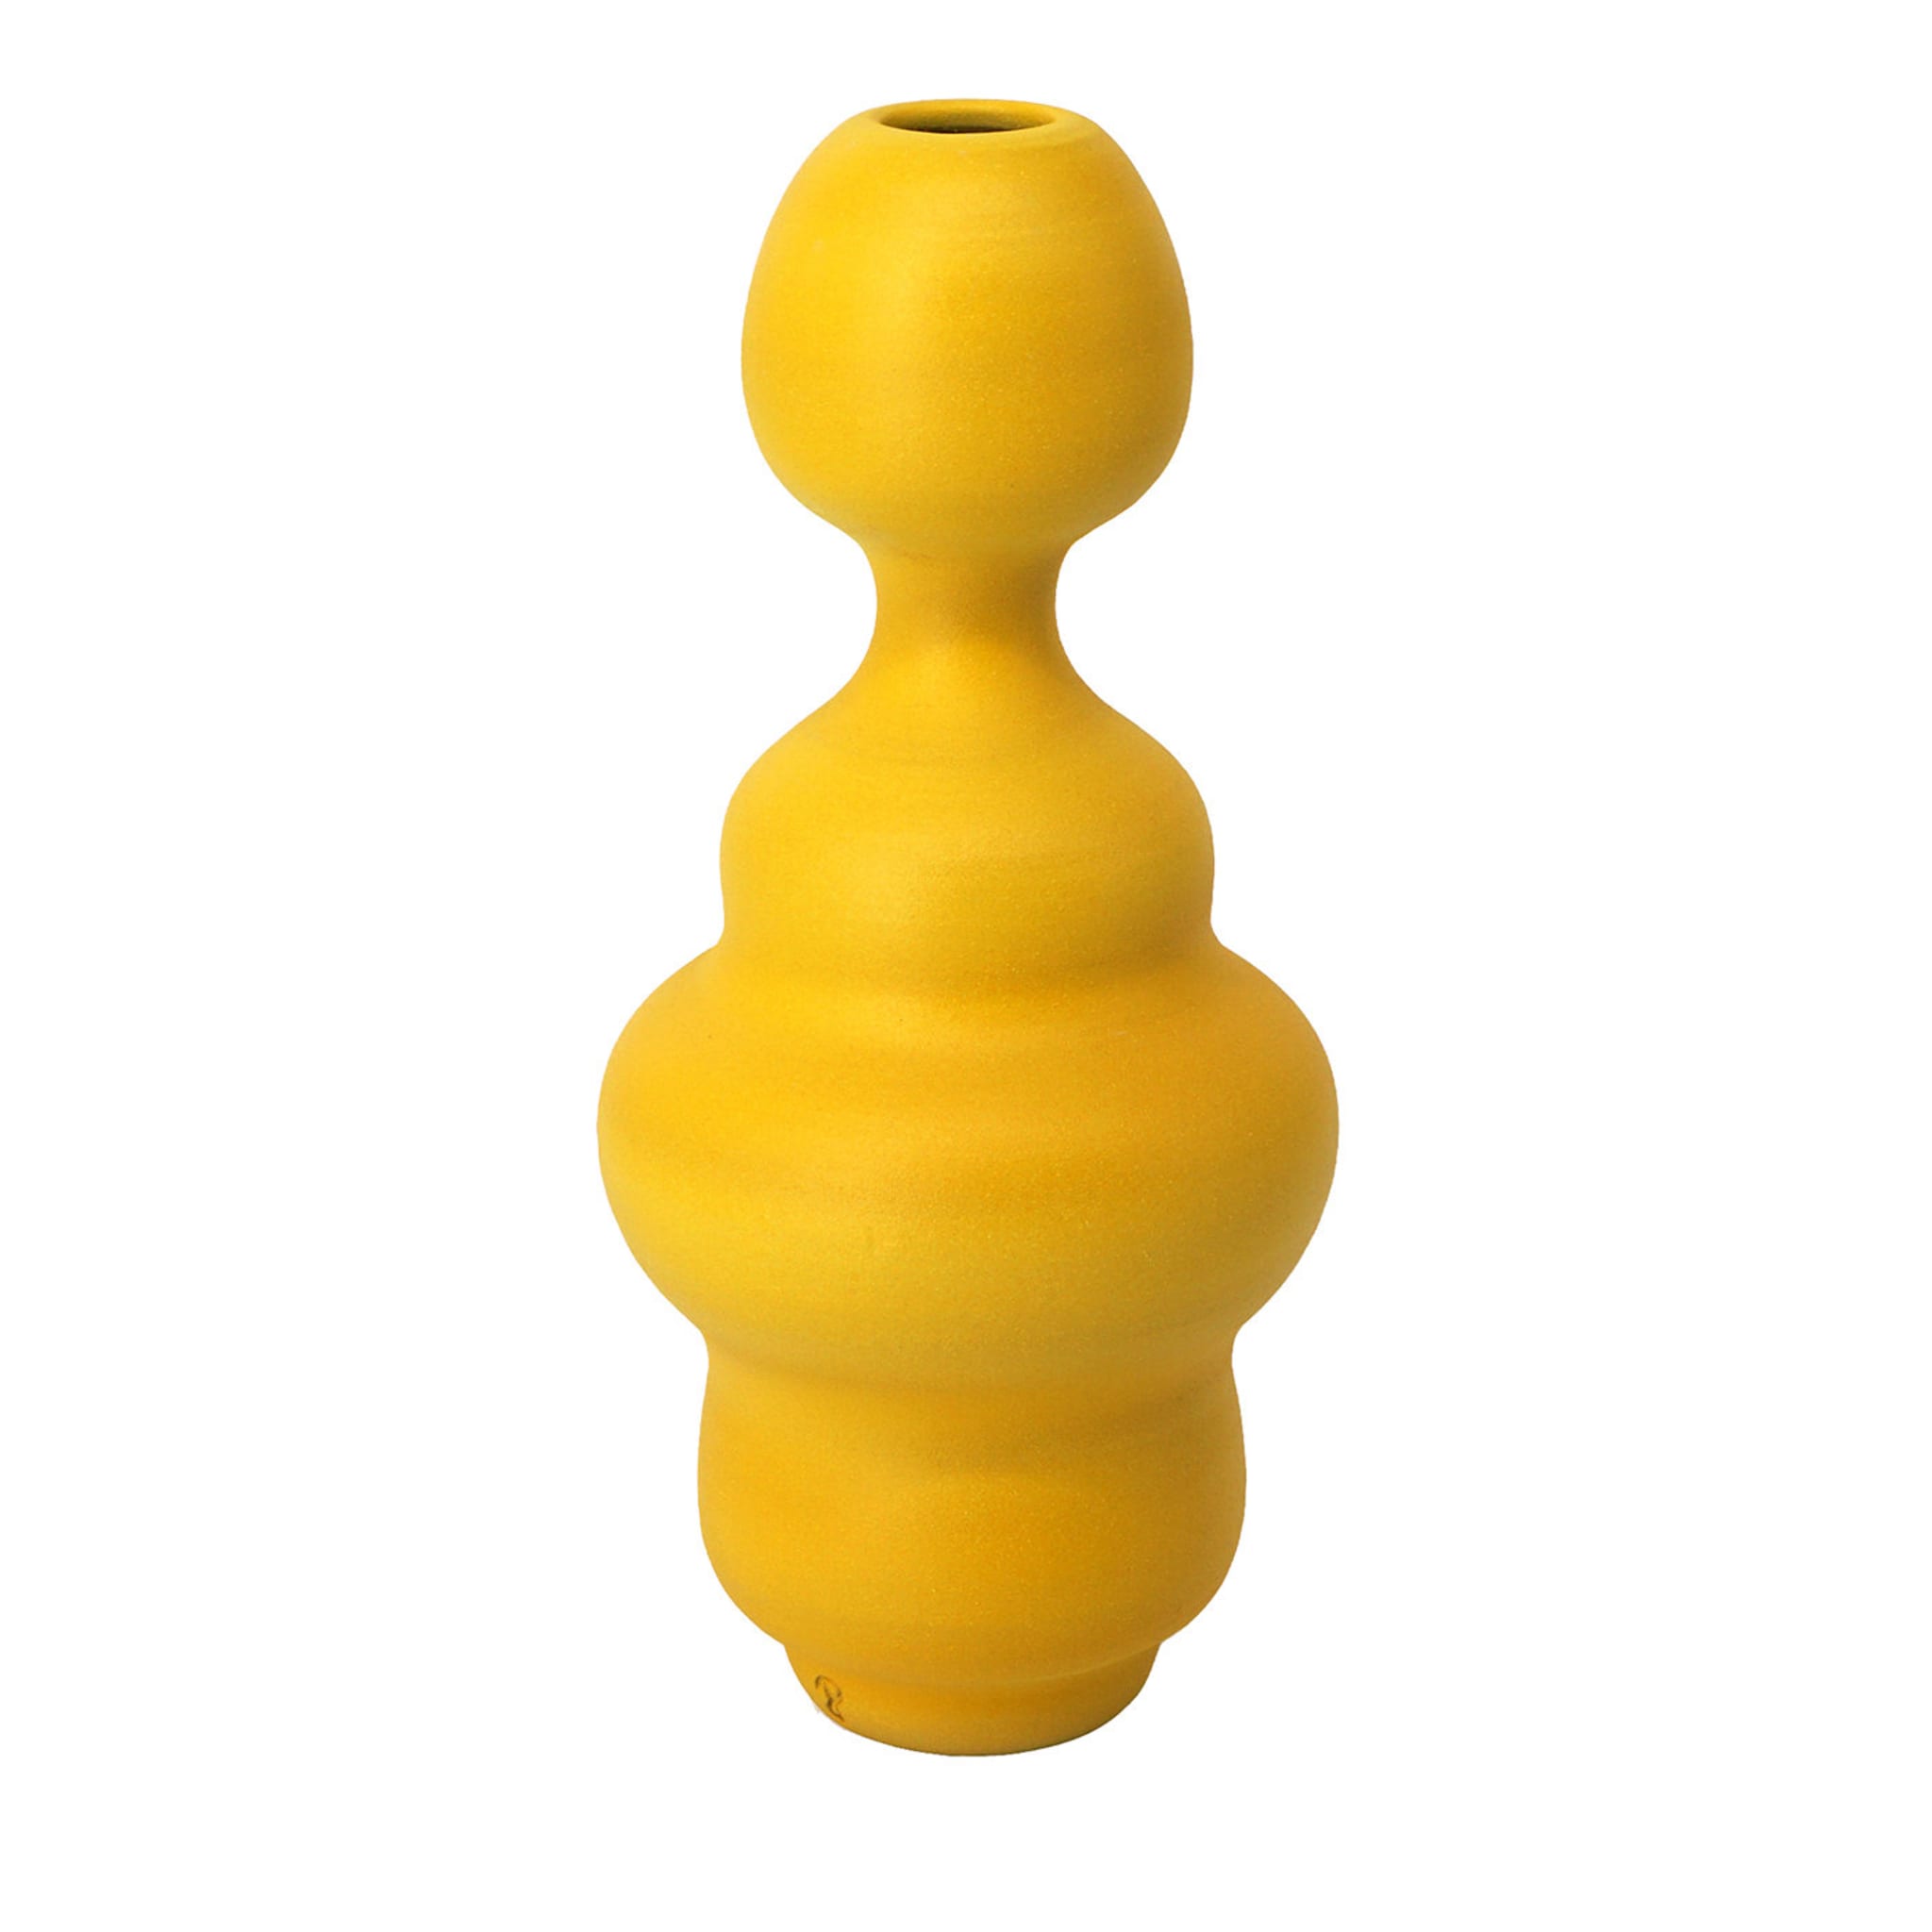 Crisalide Yellow Vase #7 - Main view